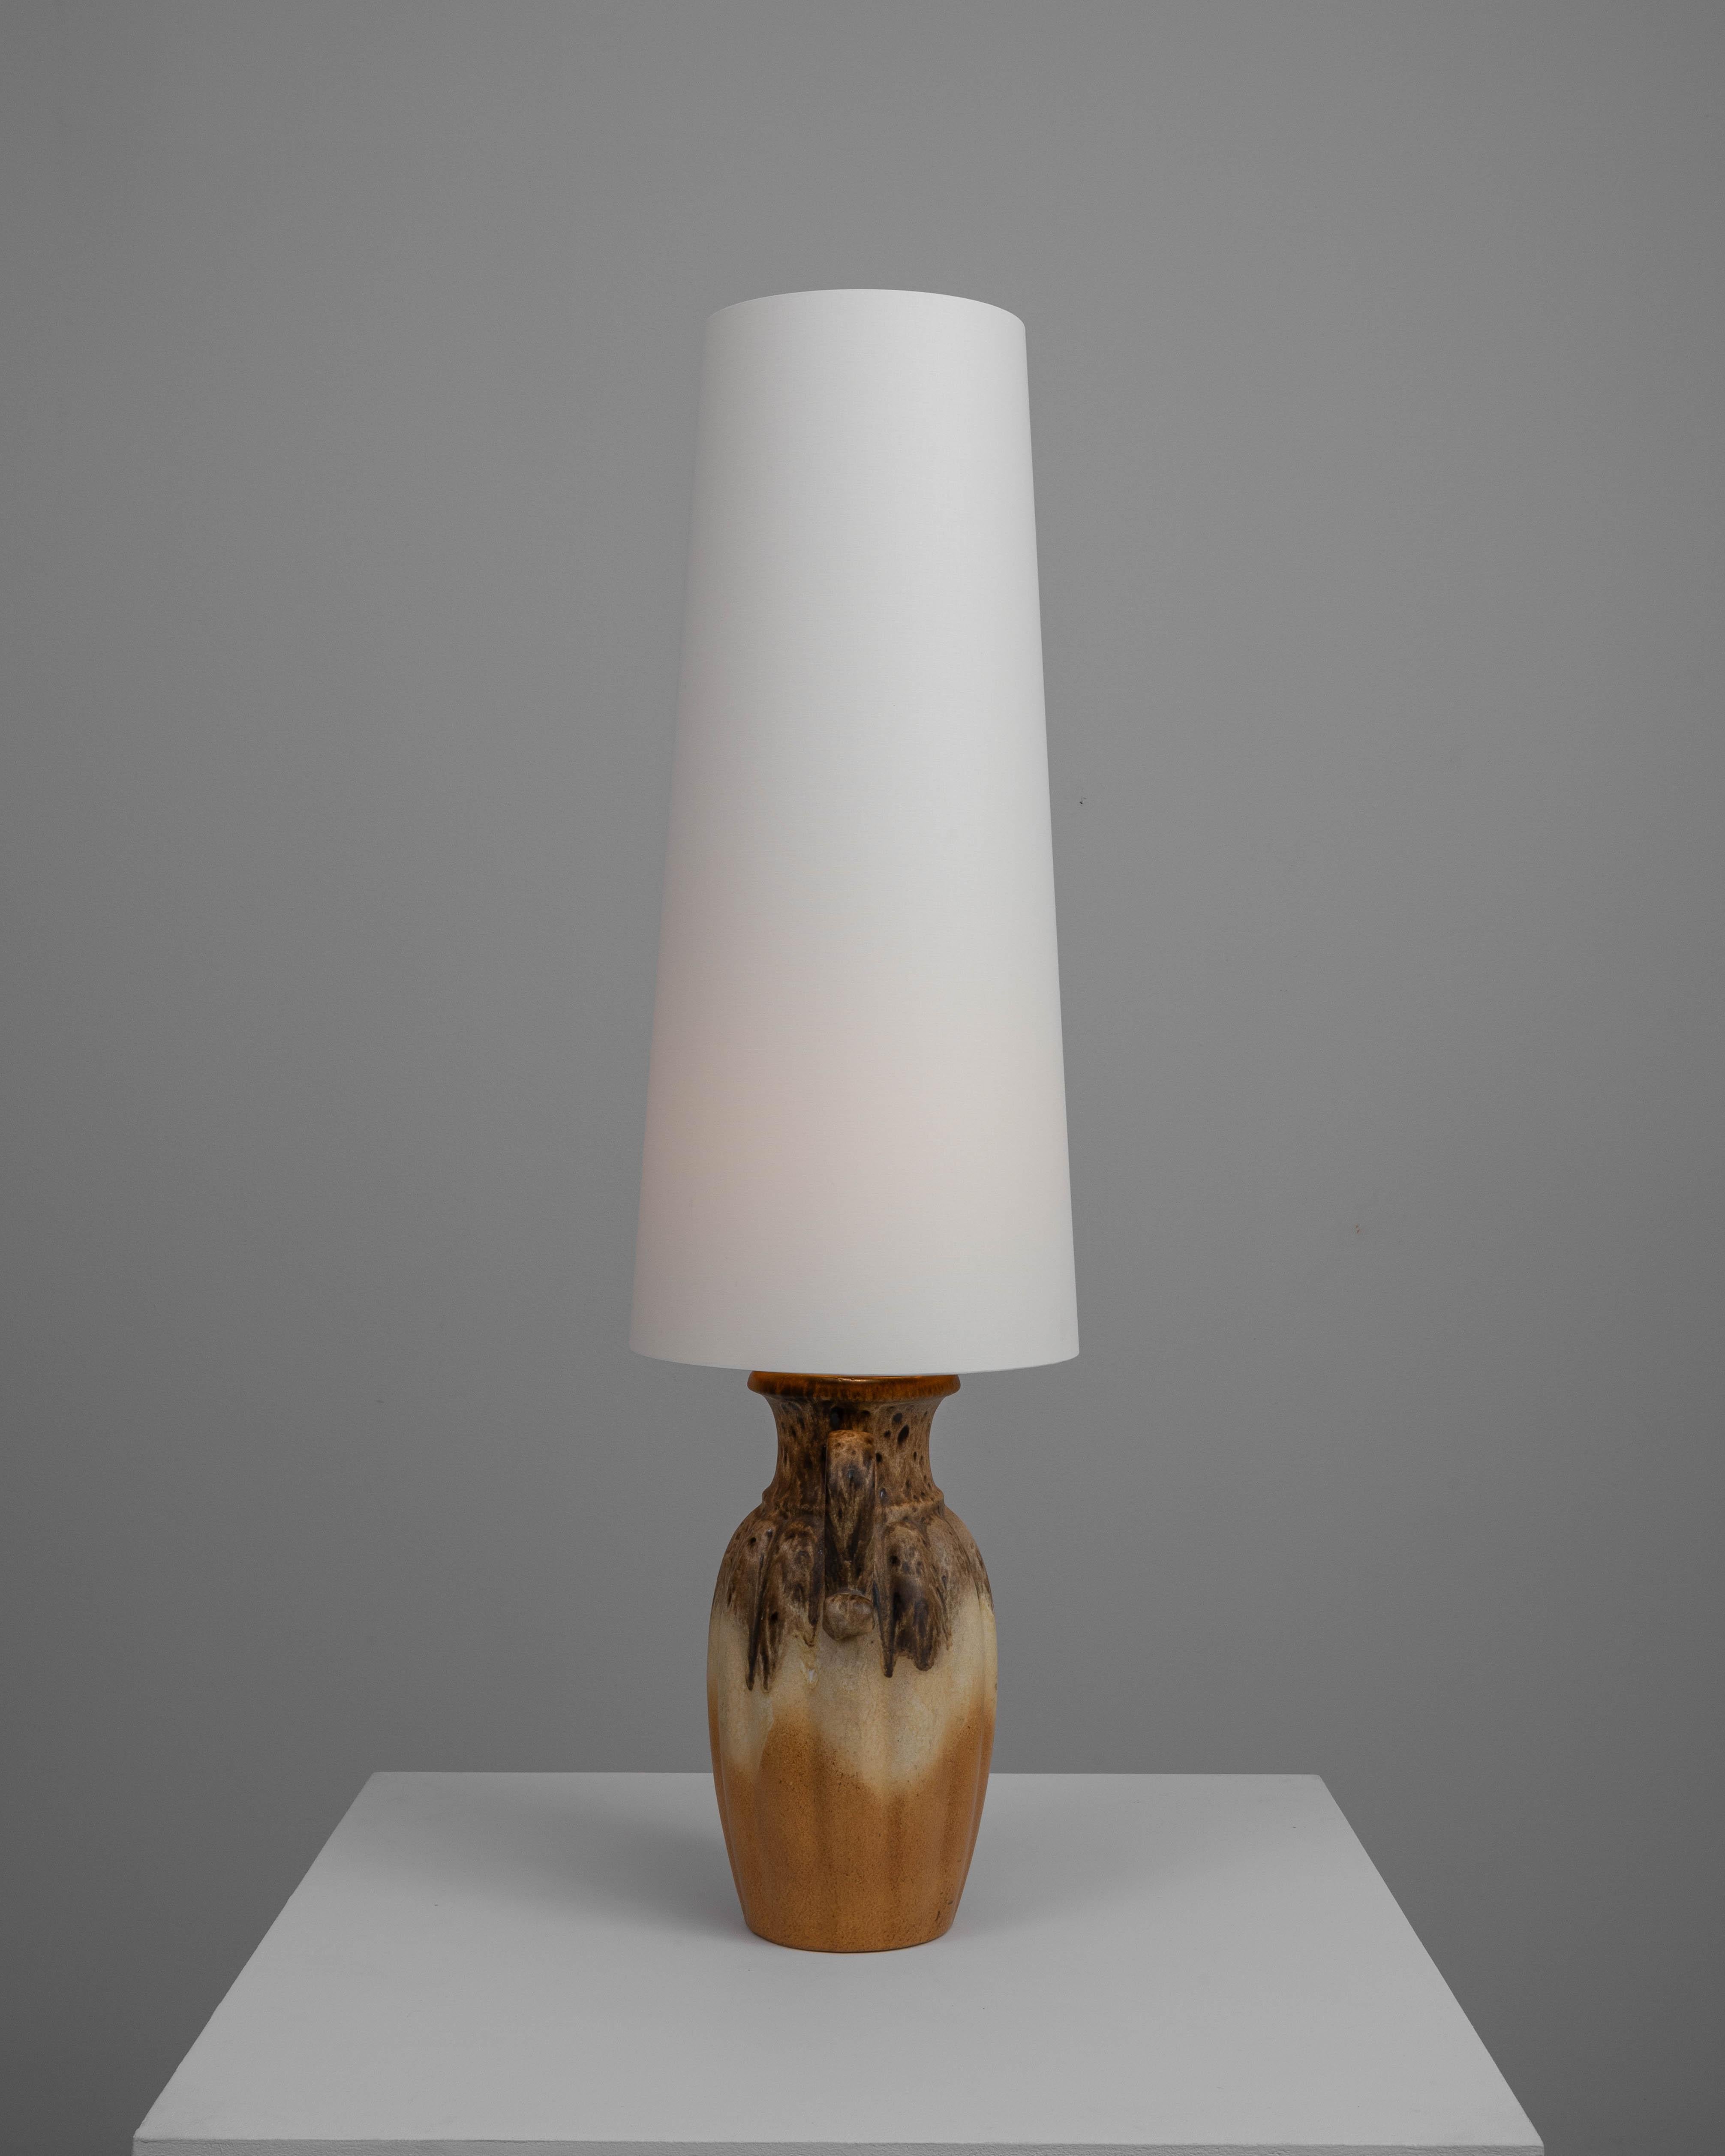 Cette lampe de table en céramique allemande du XXe siècle est une pièce exemplaire de l'artisanat du milieu du siècle. La base présente une forme robuste et naturelle avec une glaçure dynamique et fluide qui combine des tons de brun terreux avec des